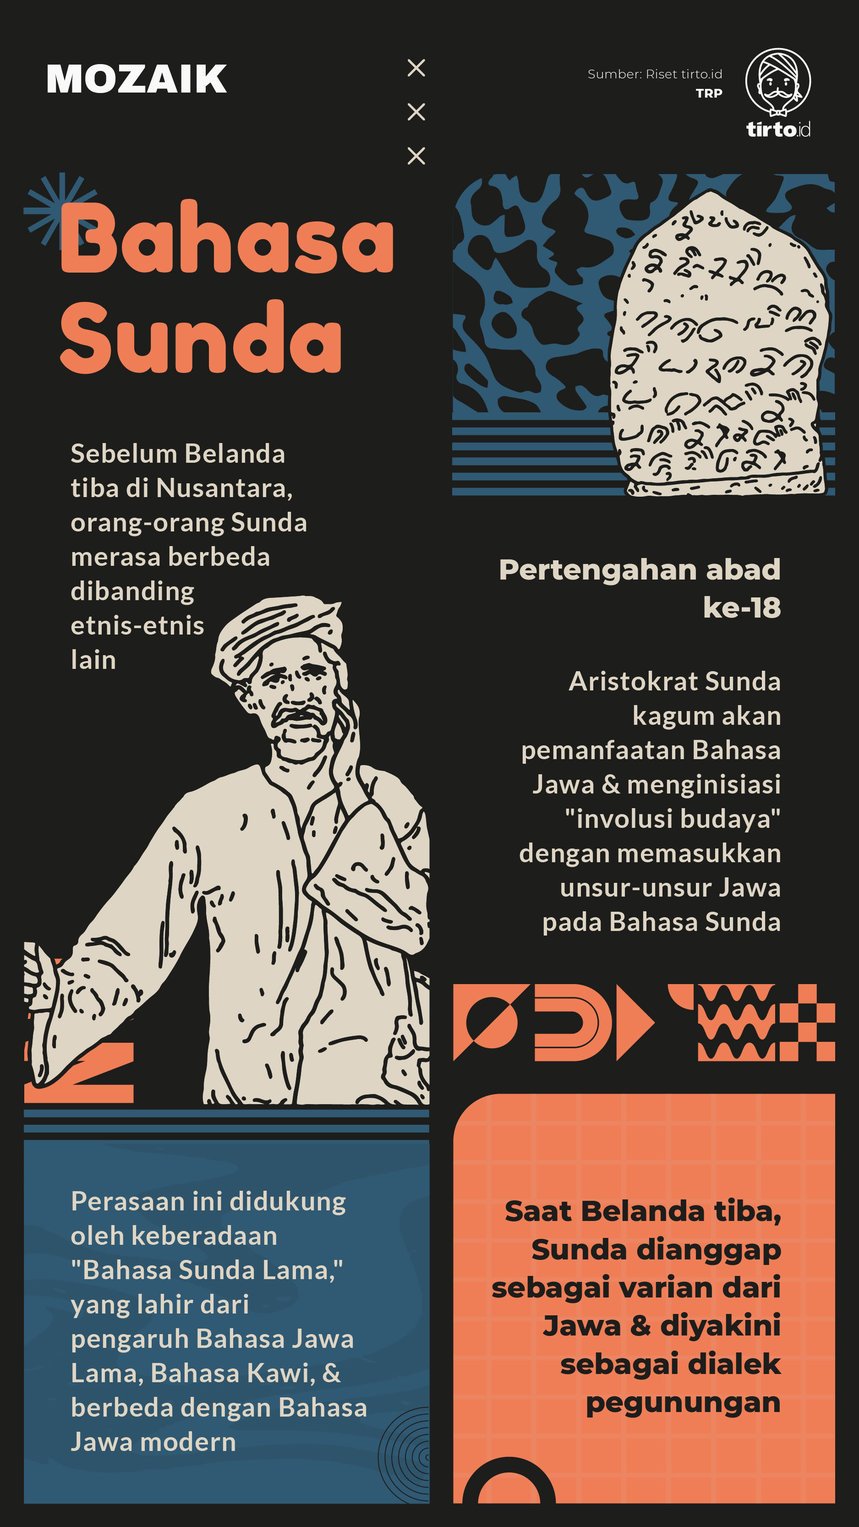 Infografik Mozaik Bahasa Sunda